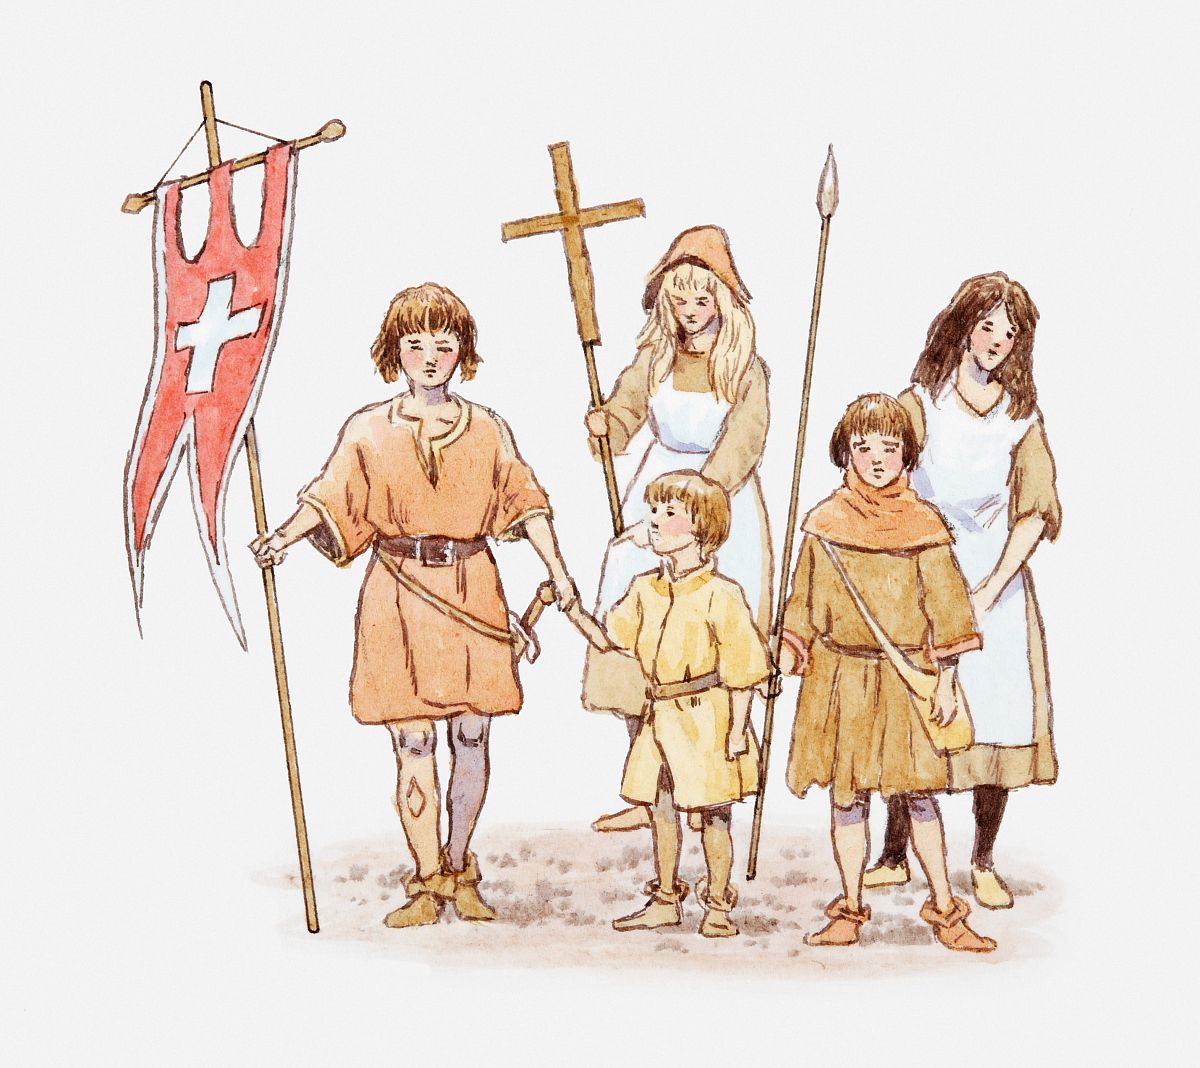 兒童十字軍